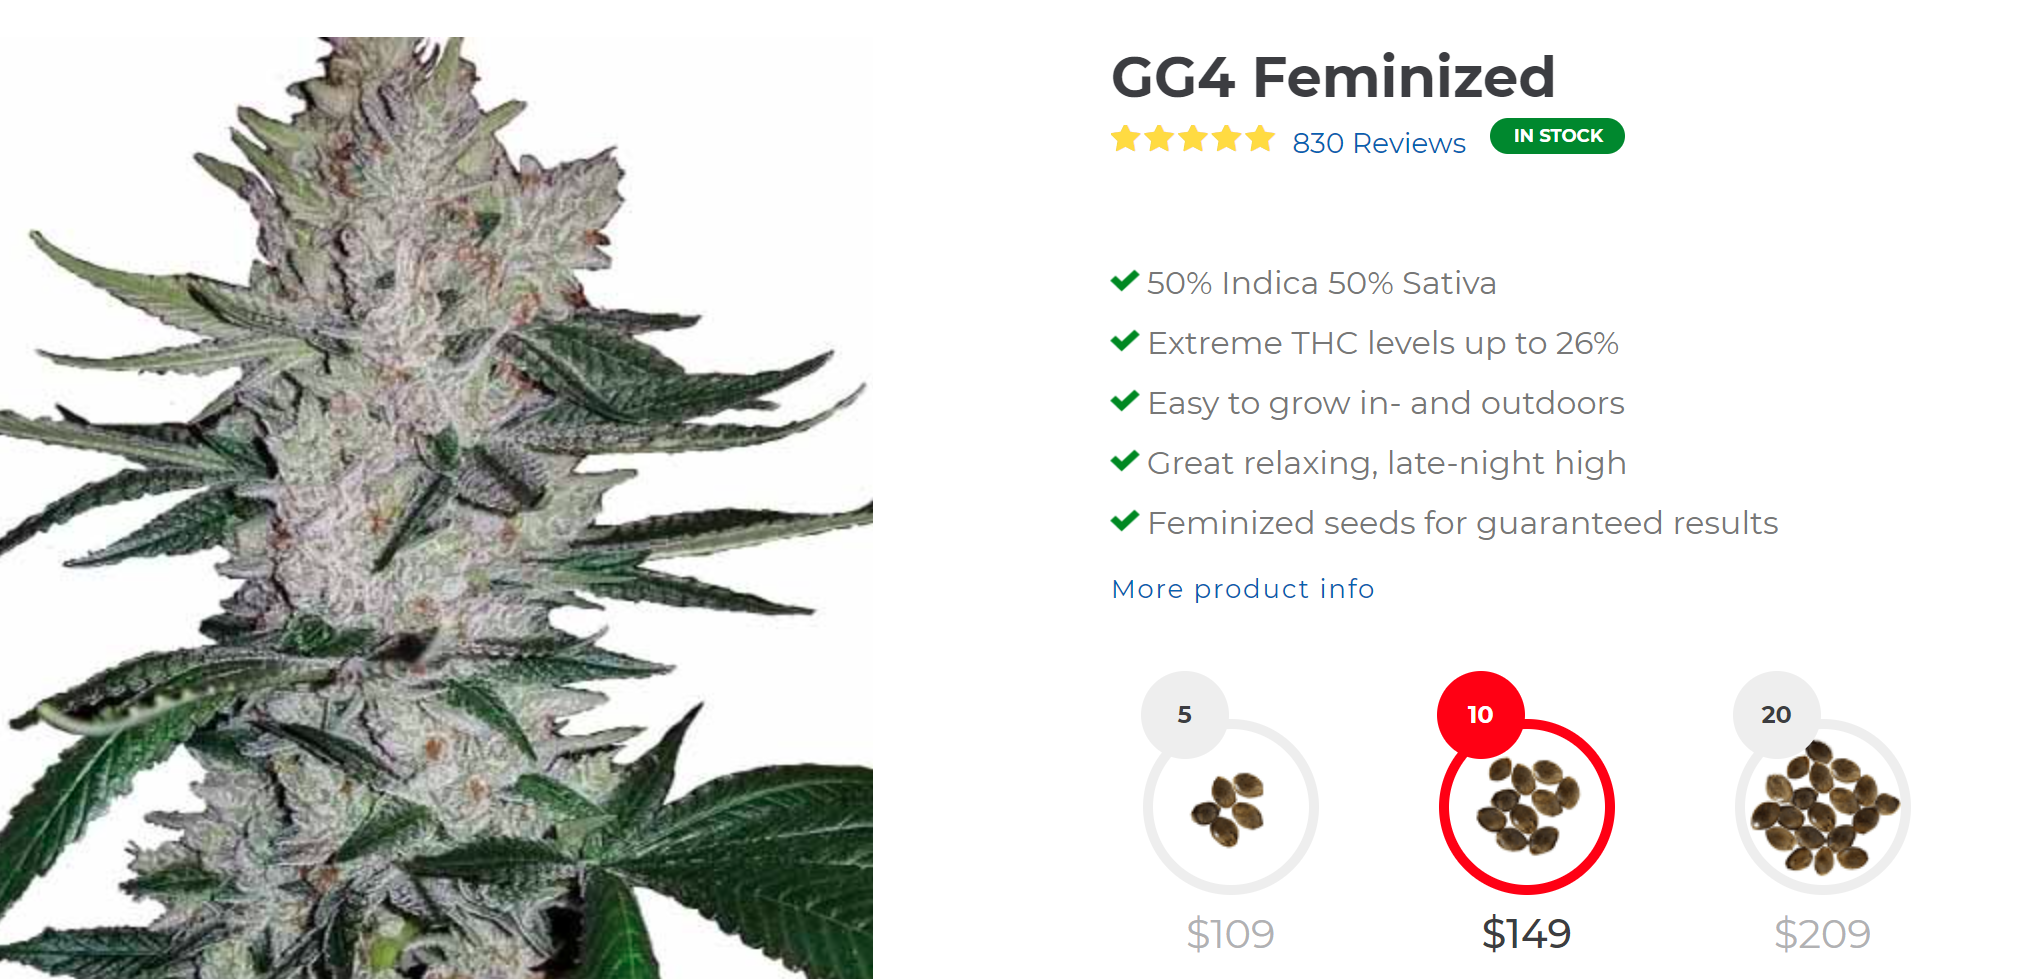 Gorilla Glue (Gg4) Feminized Marijuana Seeds